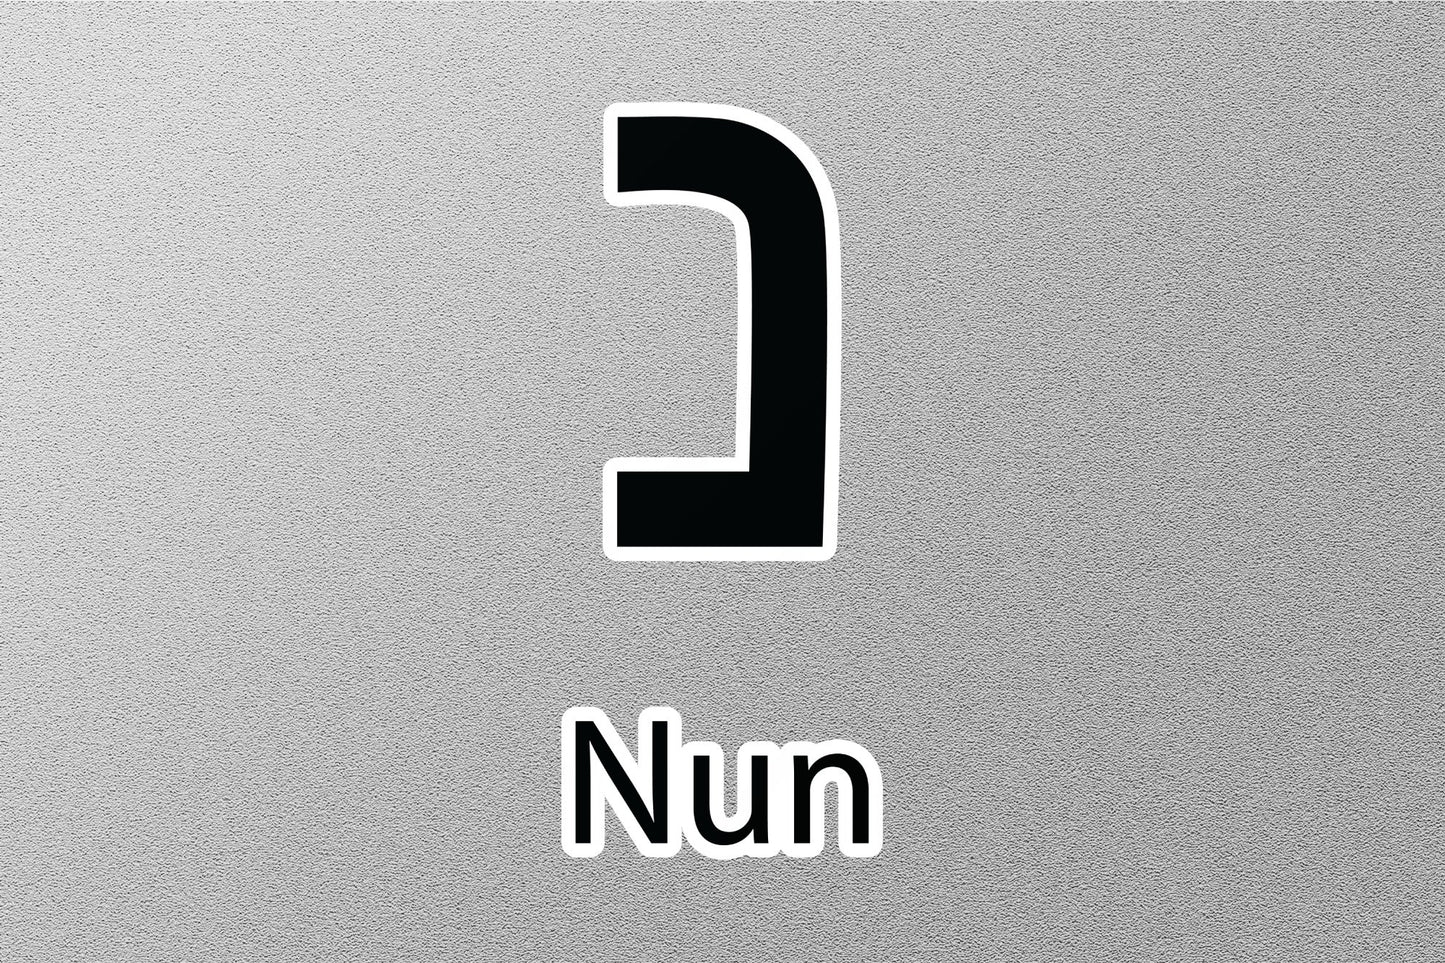 Nun Hebrew Alphabet Sticker